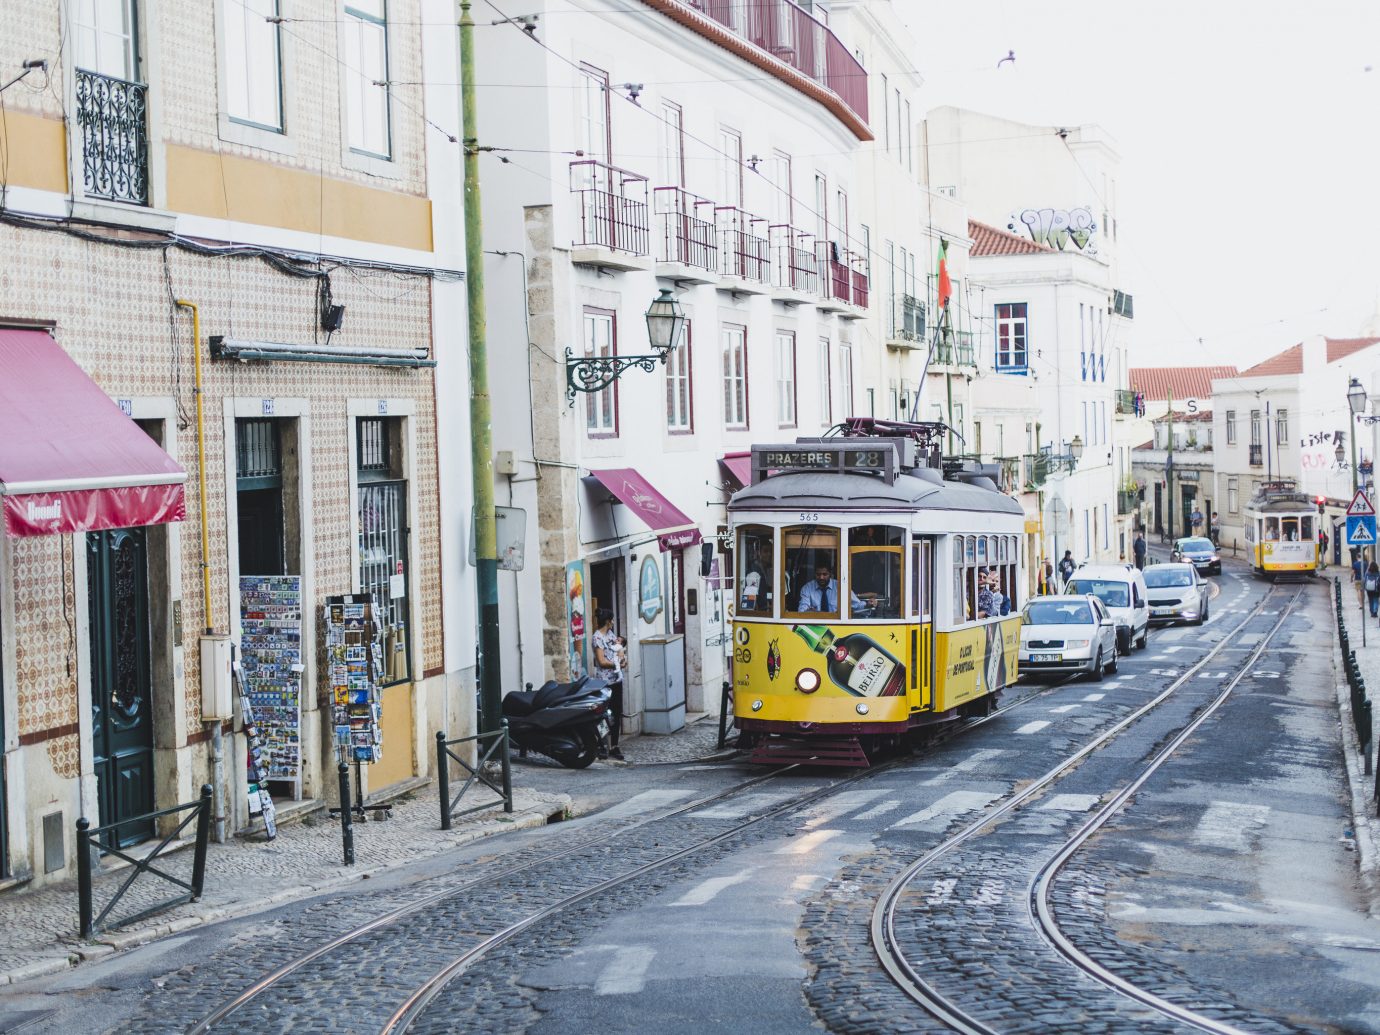 Trolly car in Lisbon Portugal